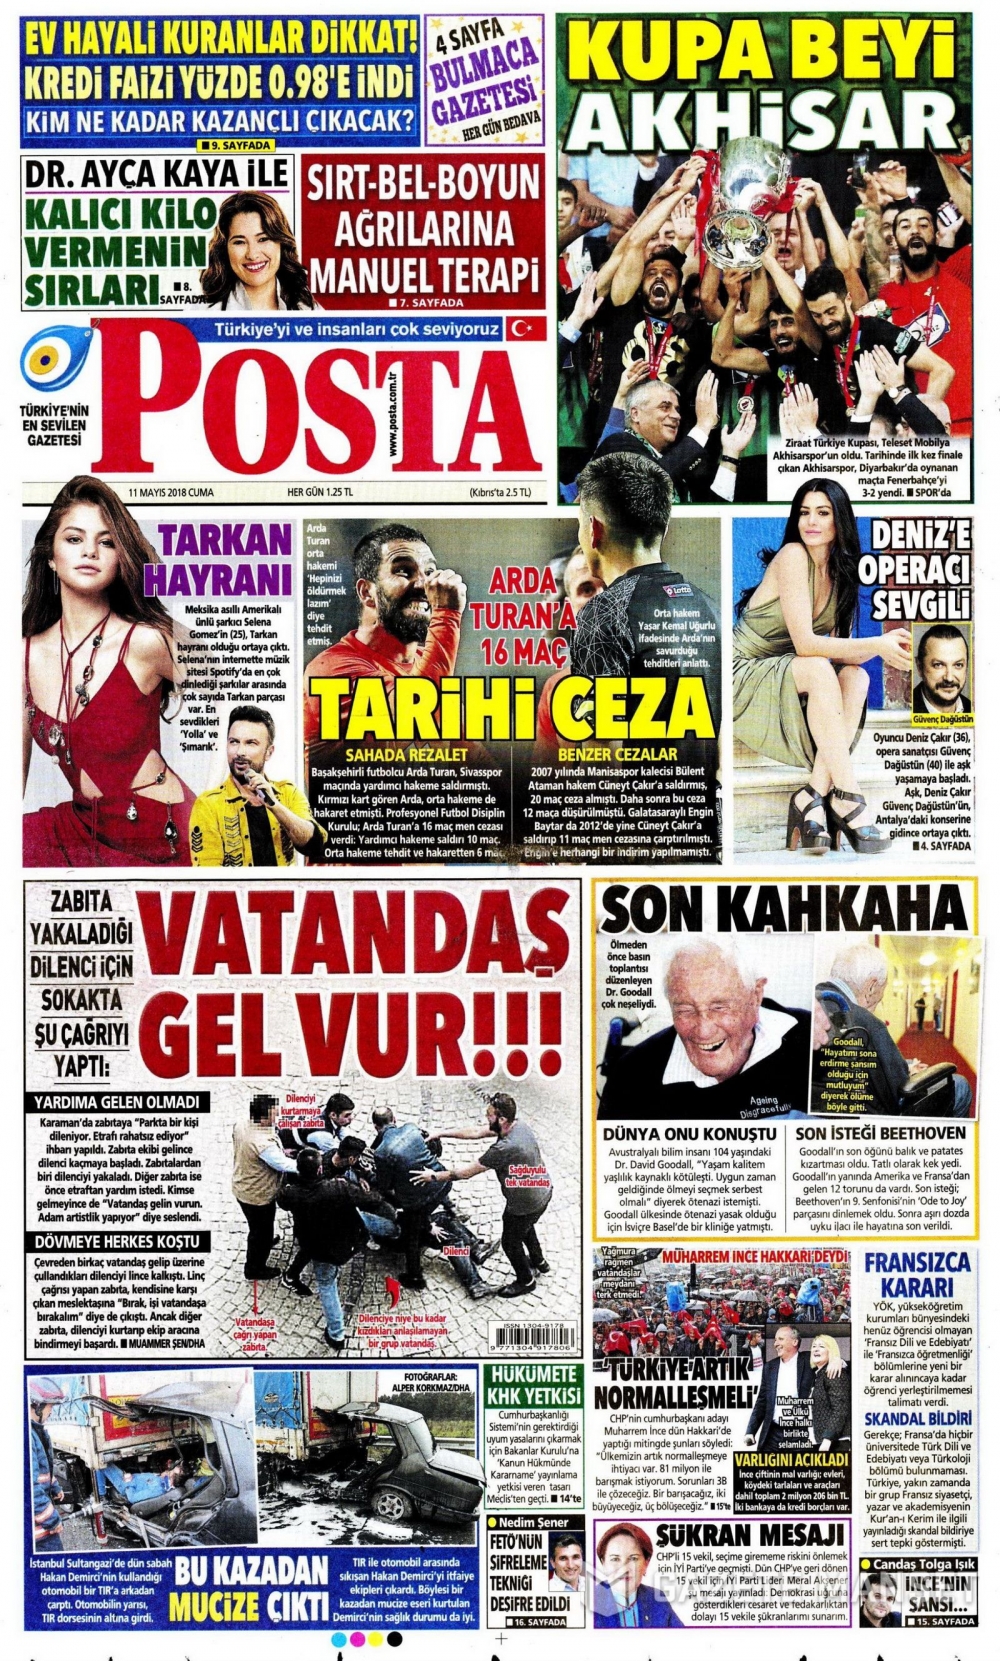 Ziraat Türkiye Kupası Şampiyonu Akhisarspor'un Gazetelerdeki manşet 21